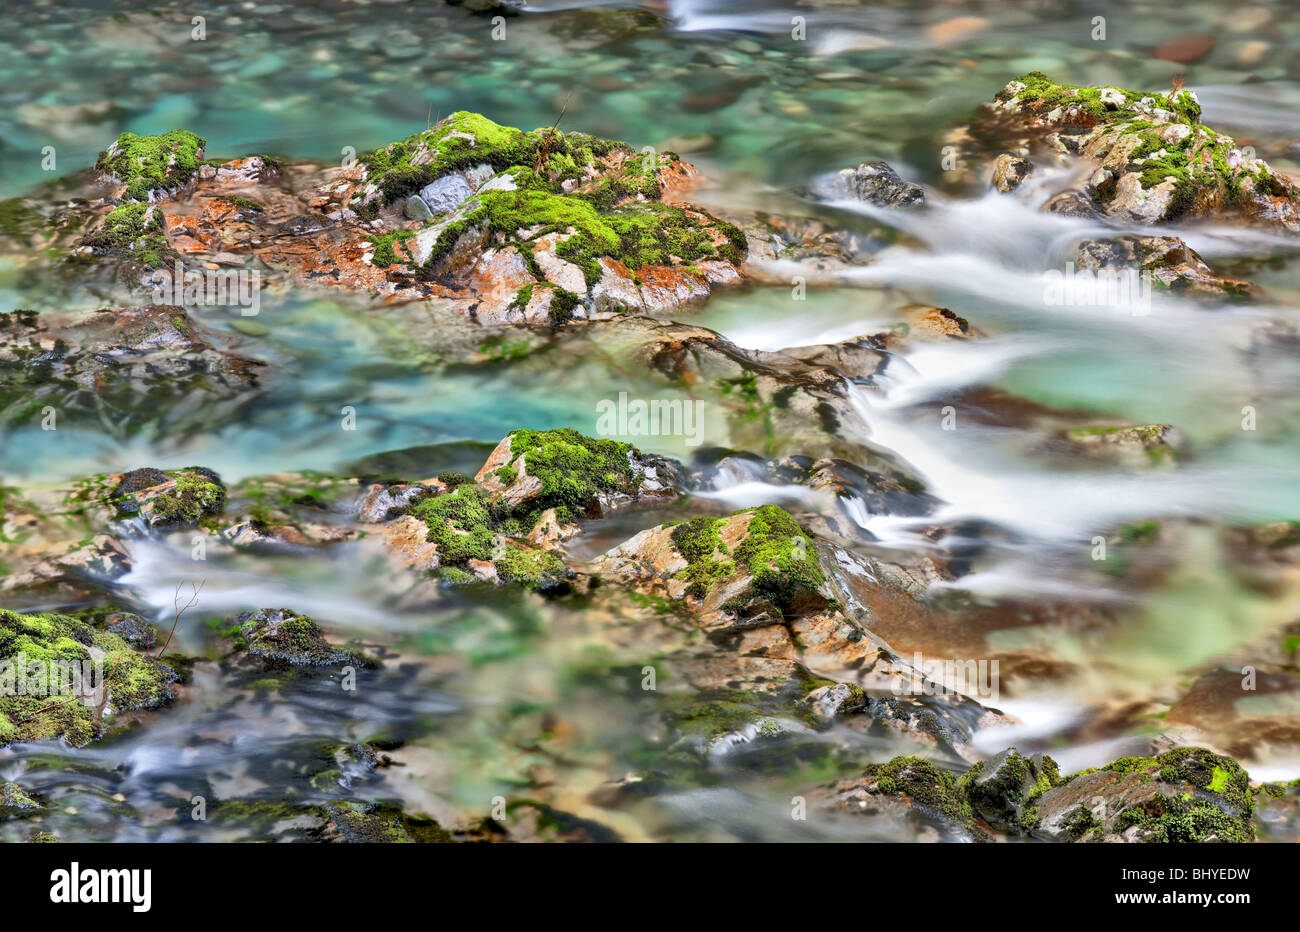 Peu au nord de la rivière avec des rochers colorés Santiam et piscines. Opal Creek Scenic Zone de loisirs, Oregon Banque D'Images